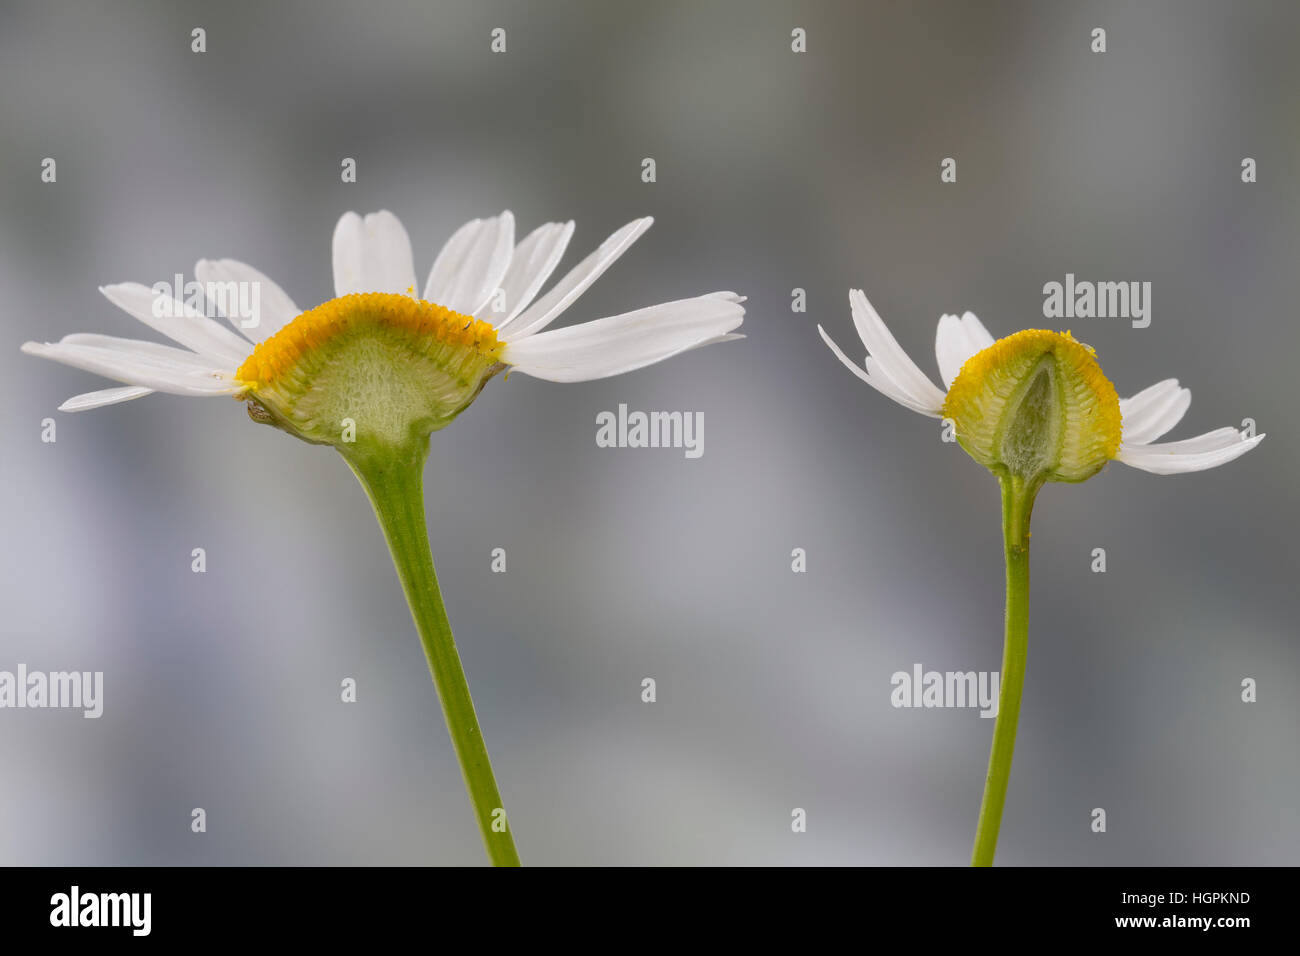 Vergleich zwischen Echter Kamille (rechts im hohlem Blütenboden mit und Längsschnitt) Unechter Kamille (gefülltem Blütenboden liens mit). Echte Kamill Banque D'Images